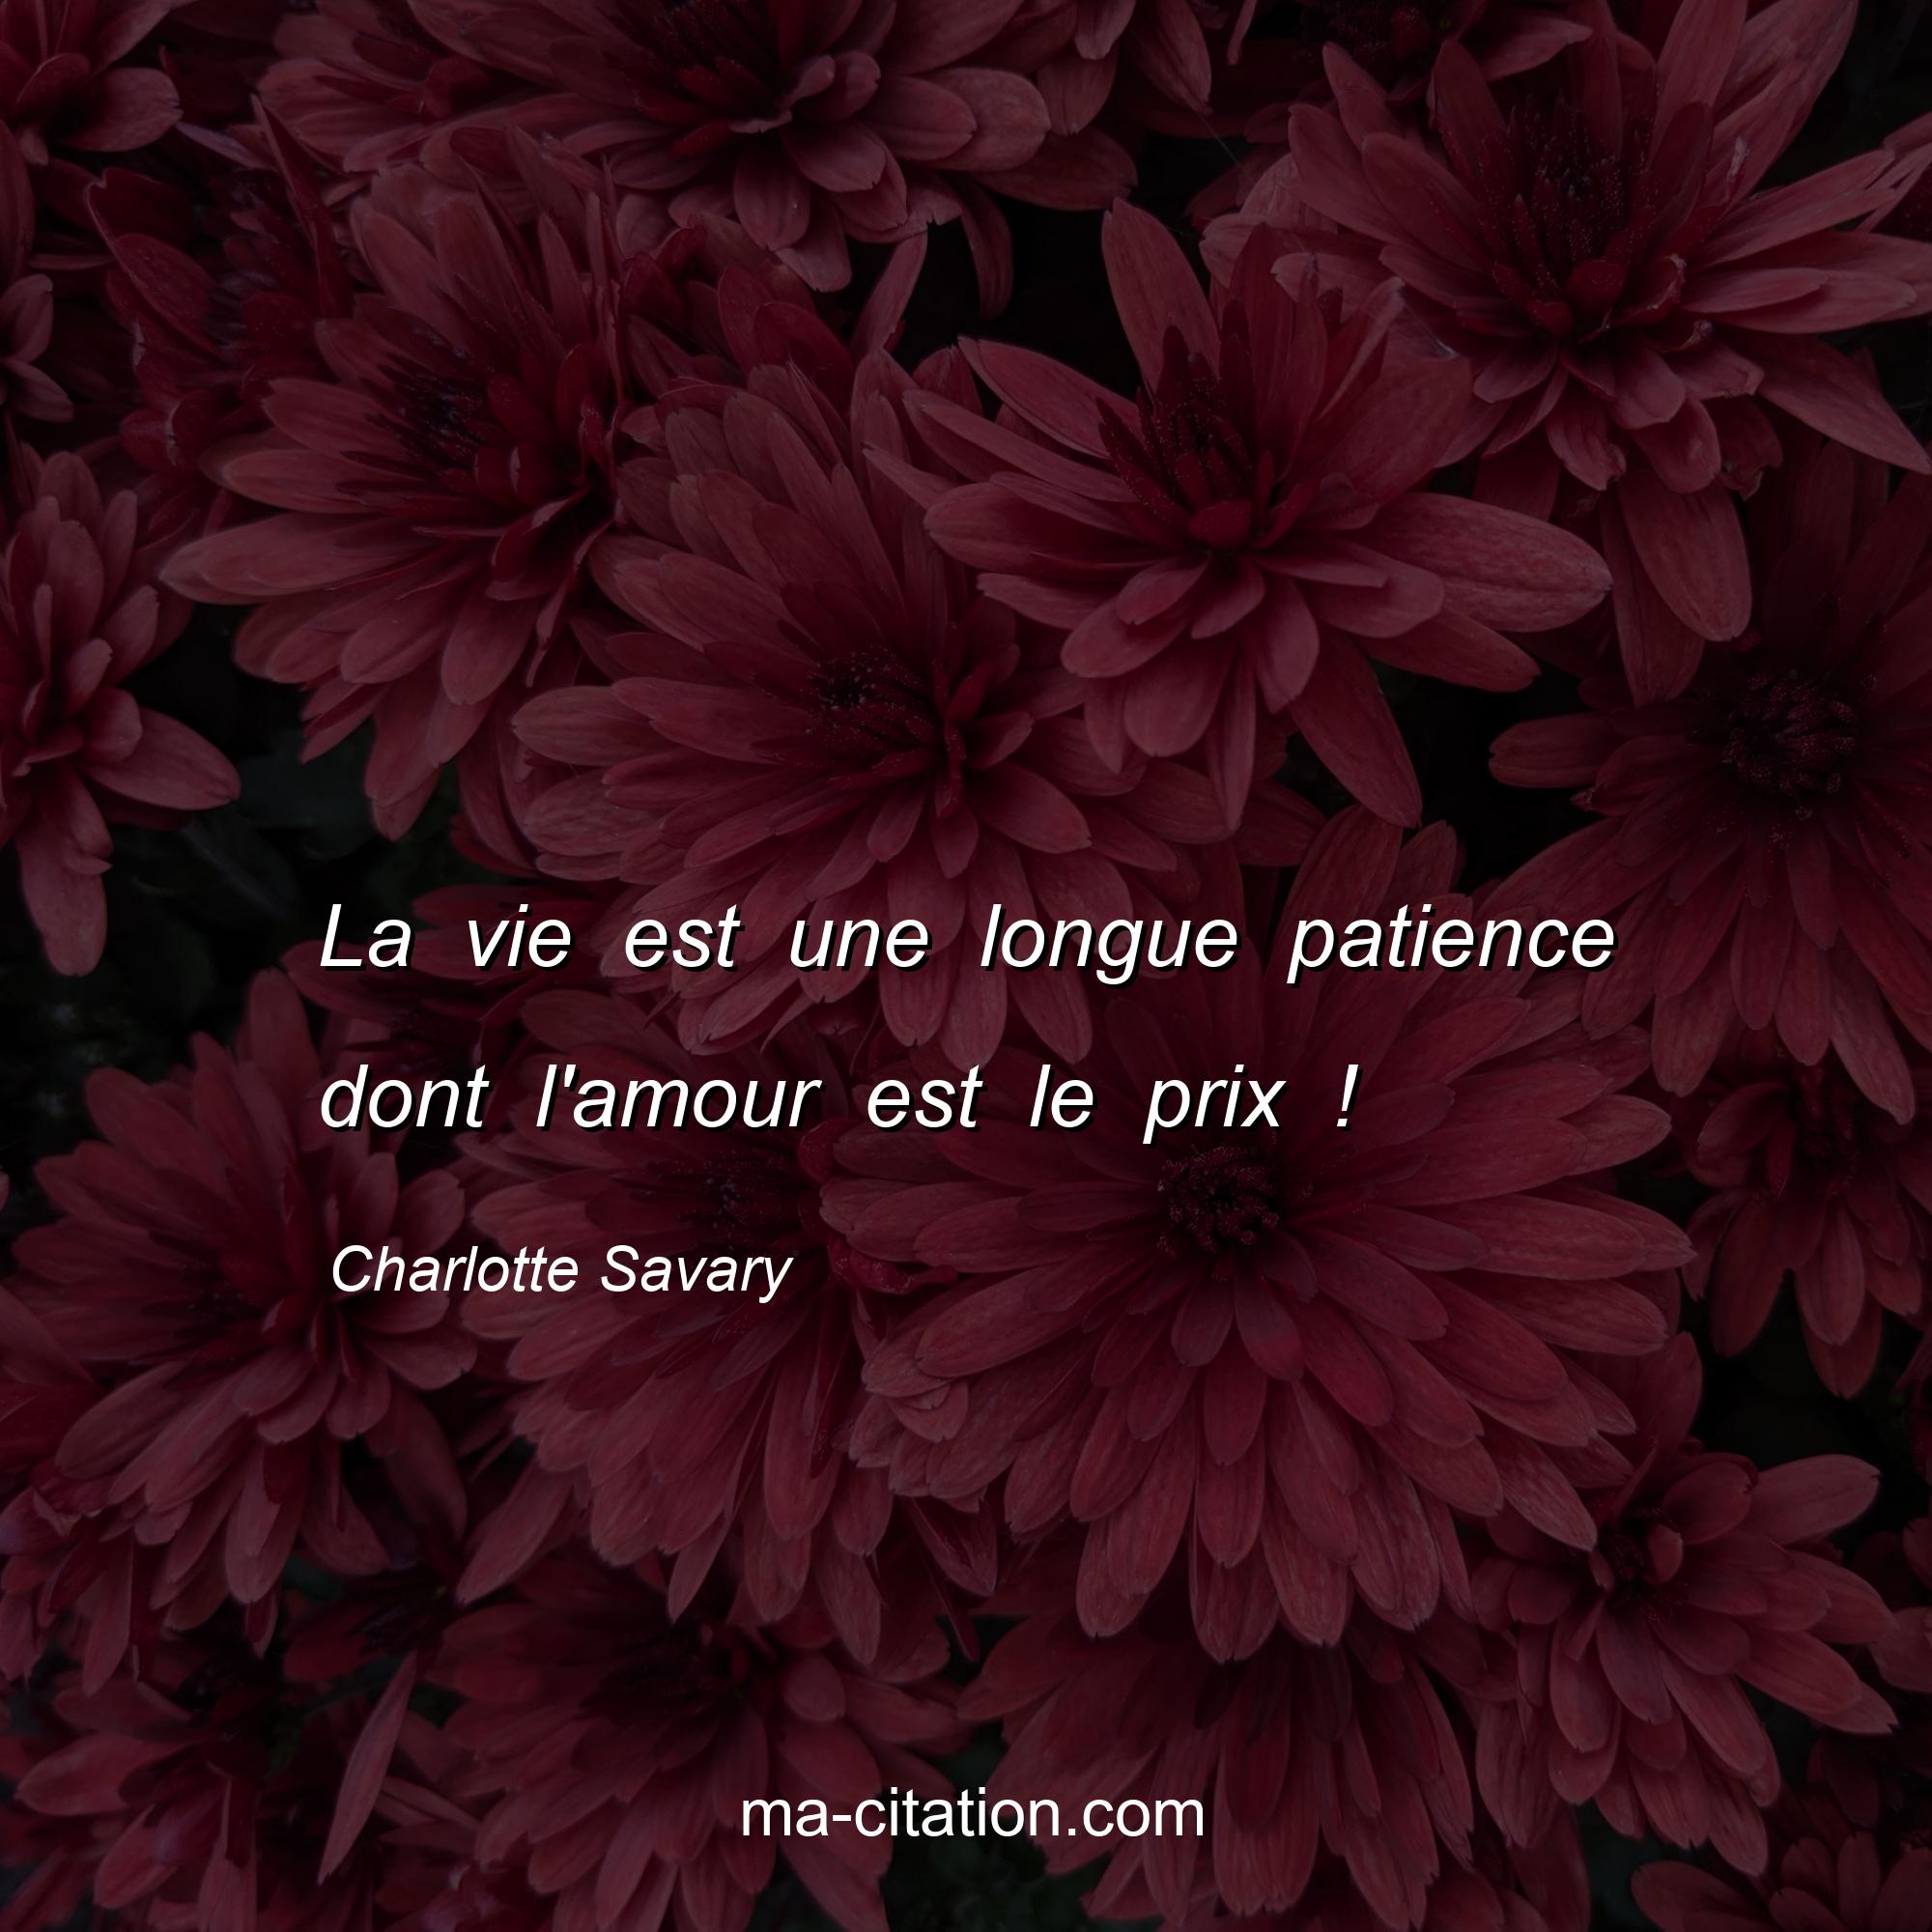 Charlotte Savary : La vie est une longue patience dont l'amour est le prix !